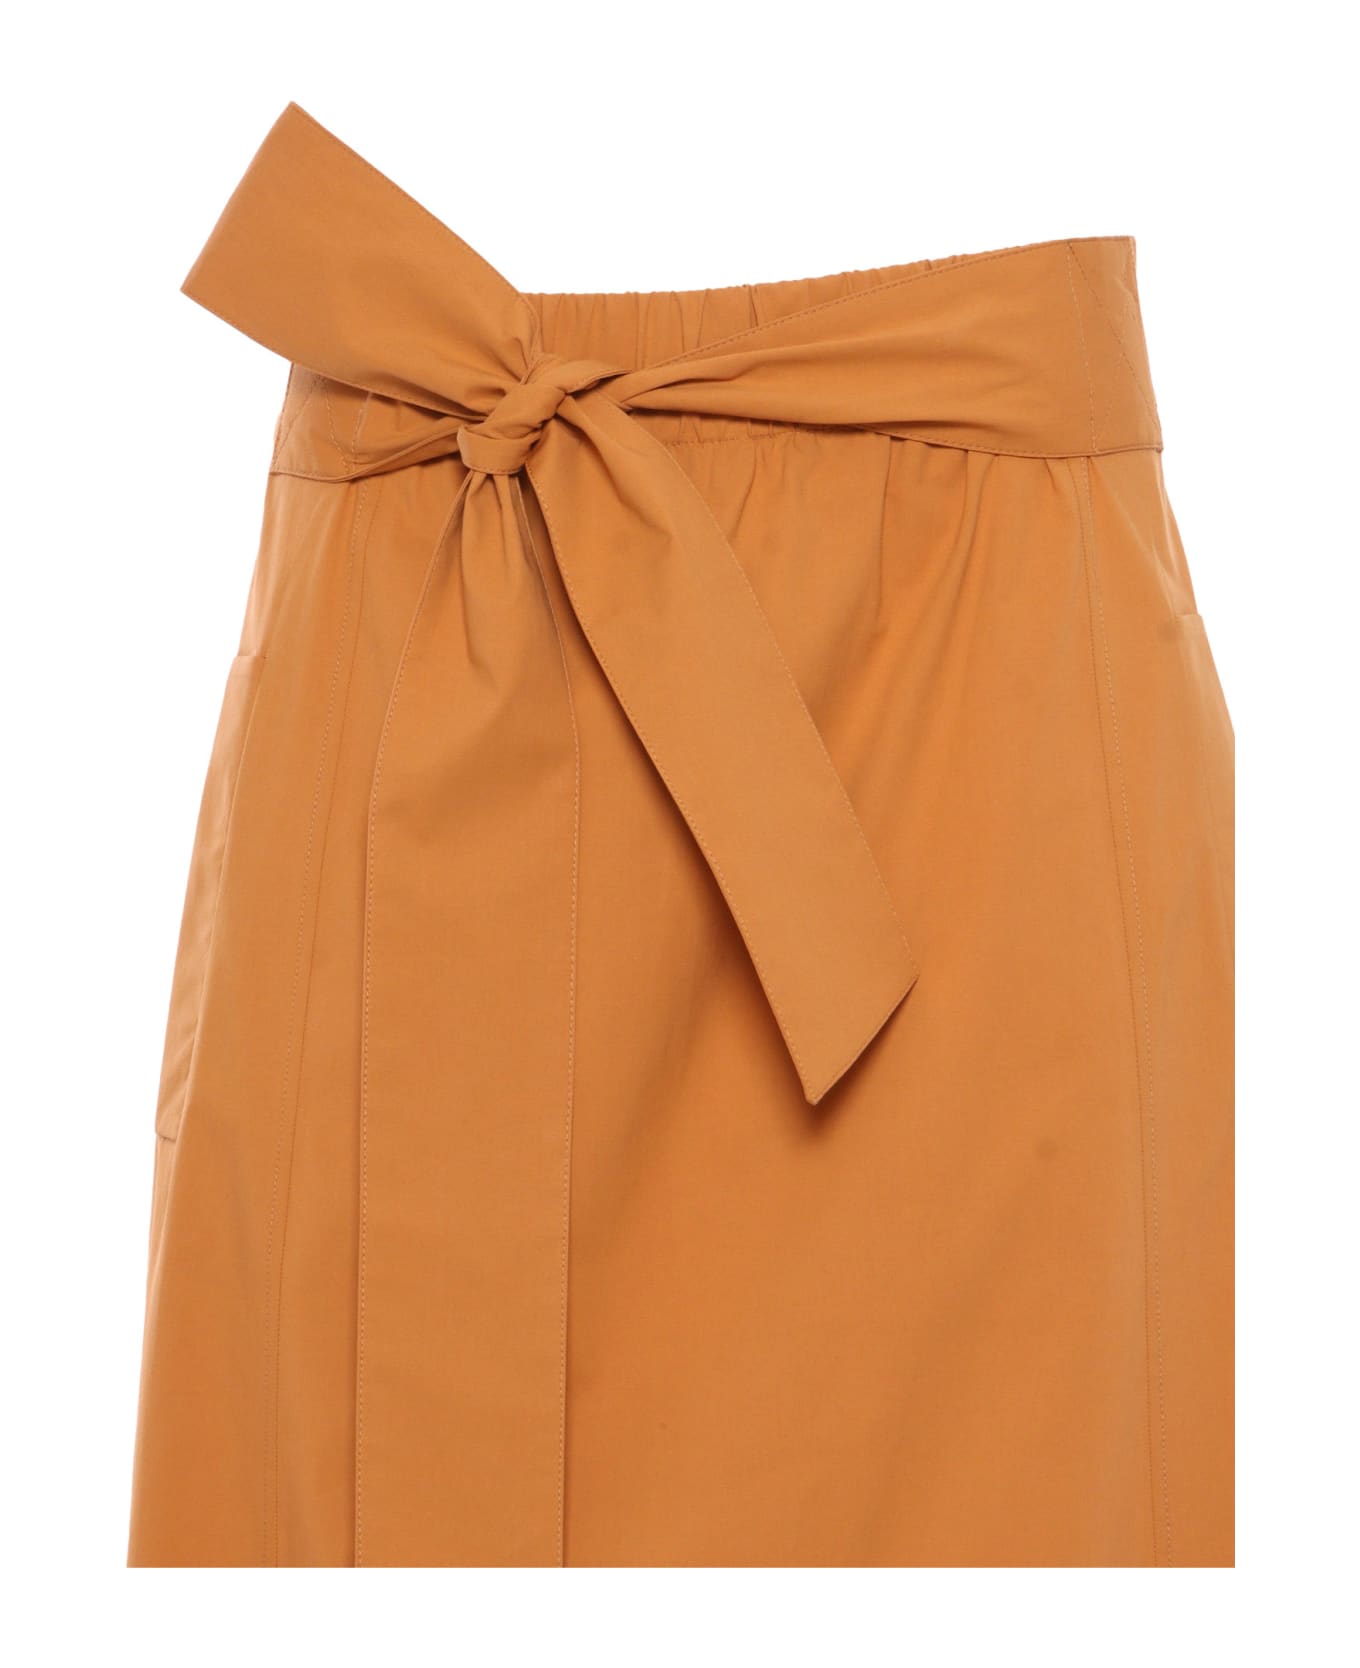 Antonelli Orange Skirt With Bow - ORANGE